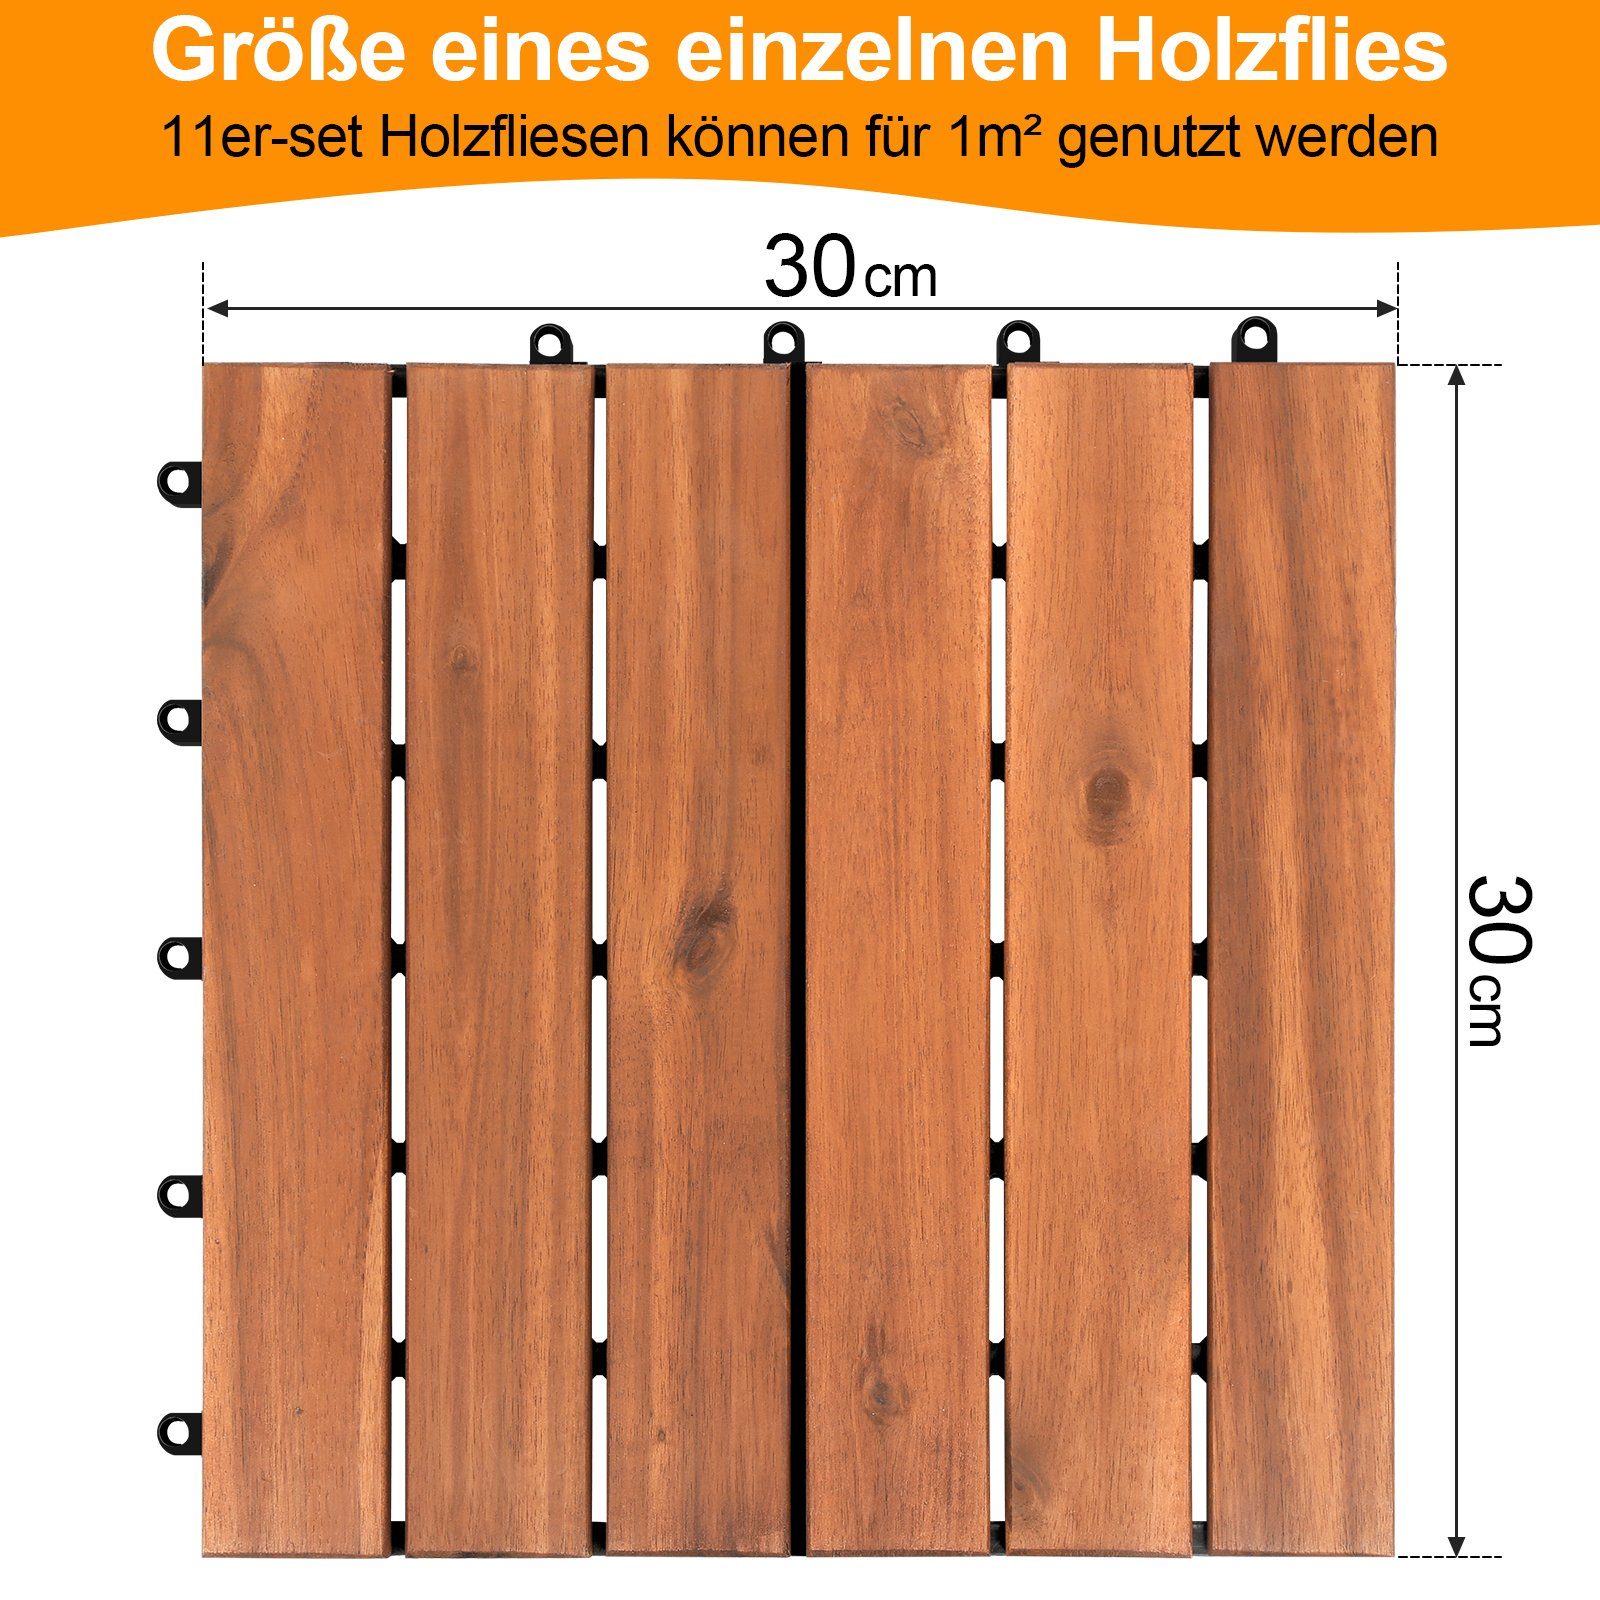 Gimisgu Holzfliesen Terrassenfliesen 22er 1-5m², aus Klicksystem Balkonfliesen Gartenfliesen Akazien